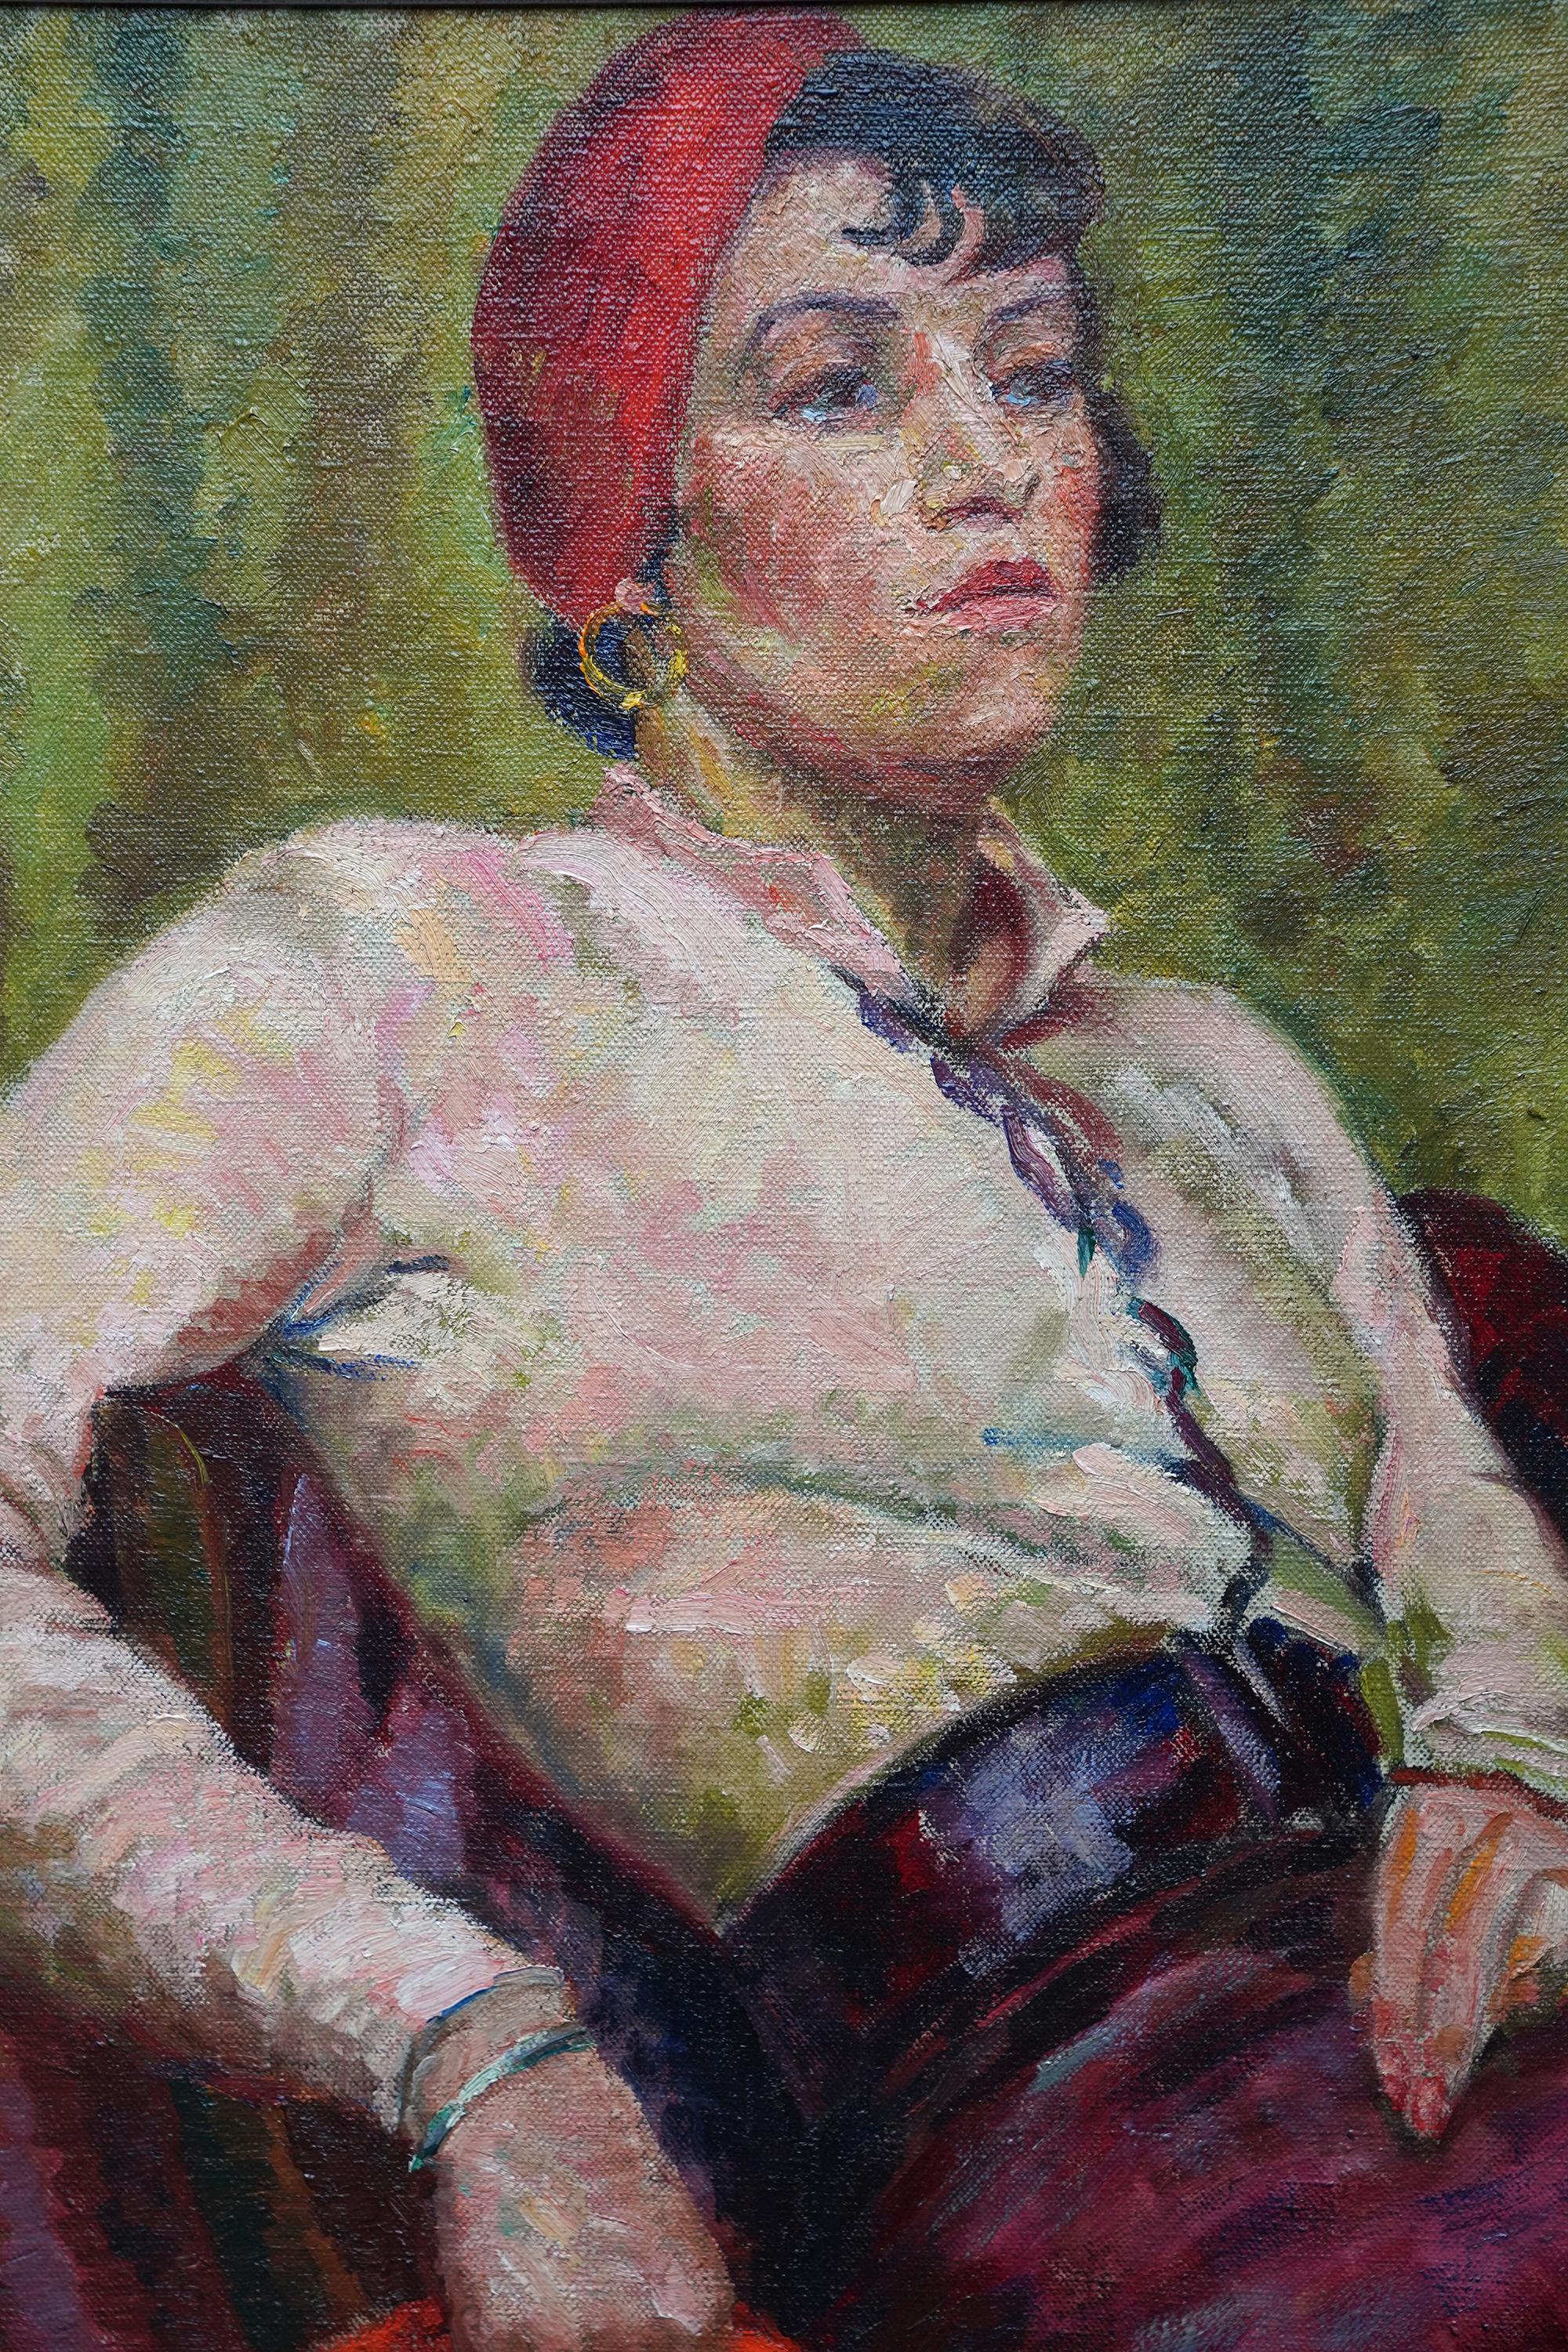 Ce saisissant portrait à l'huile de style Art déco est l'œuvre de l'artiste féminine Jolan Polatschek Williams. Williams est née en Autriche mais s'est installée en Angleterre dans les années 1920, où elle est restée. Peint en 1934, il s'agit d'un